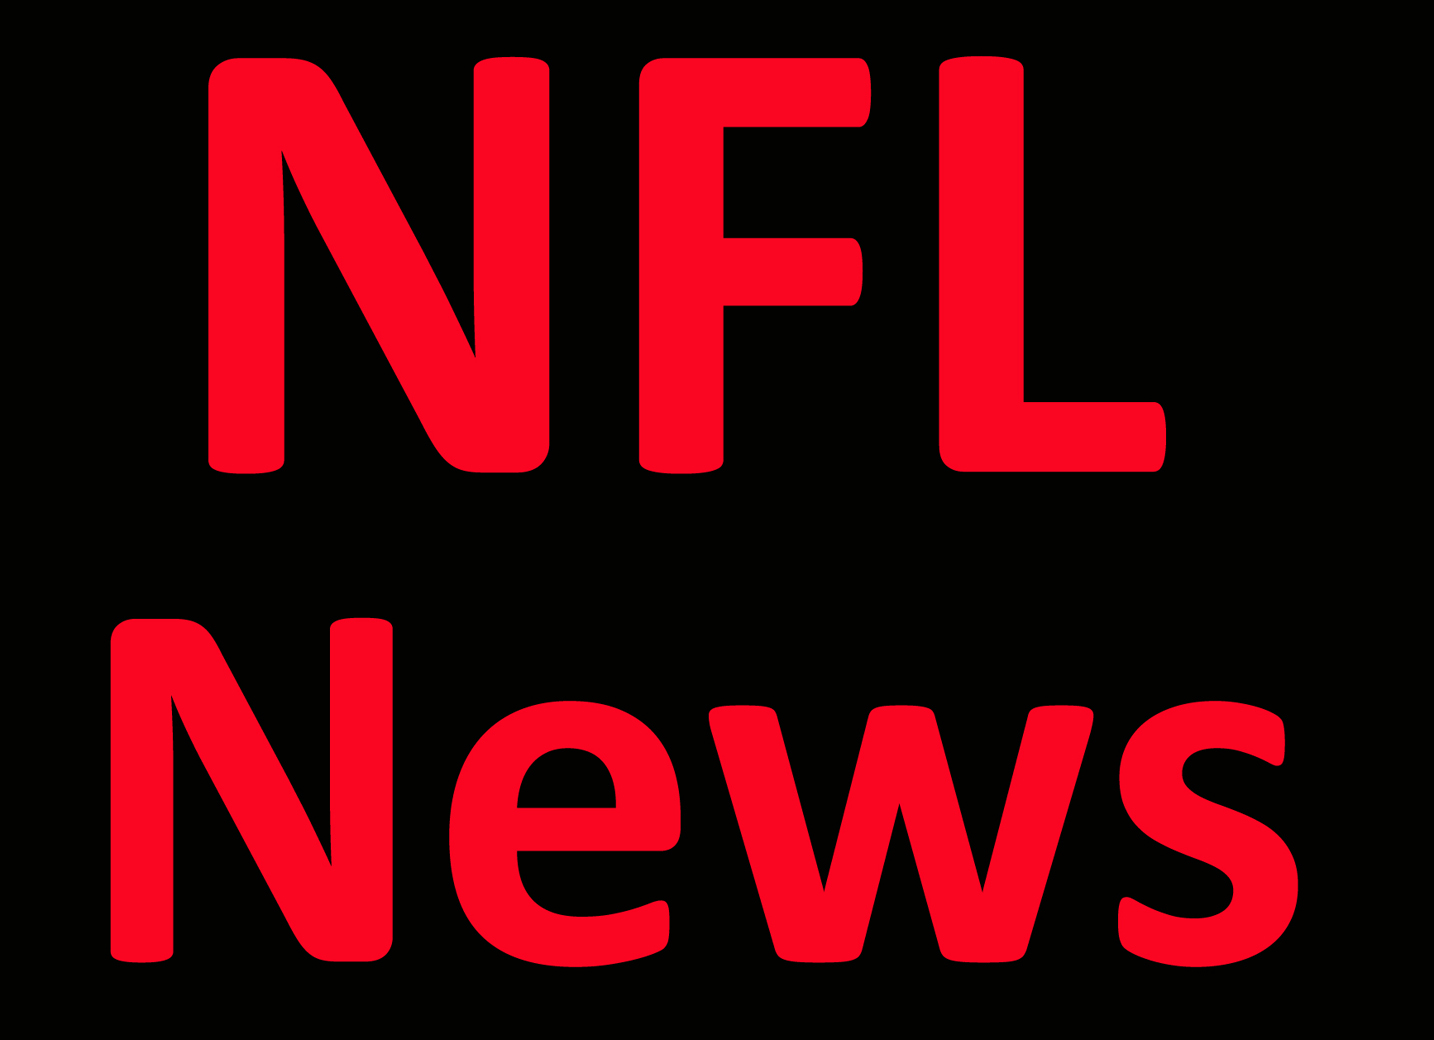 NFL News: Rams, NFL settle St. Louis’ lawsuit for $790M Per Report